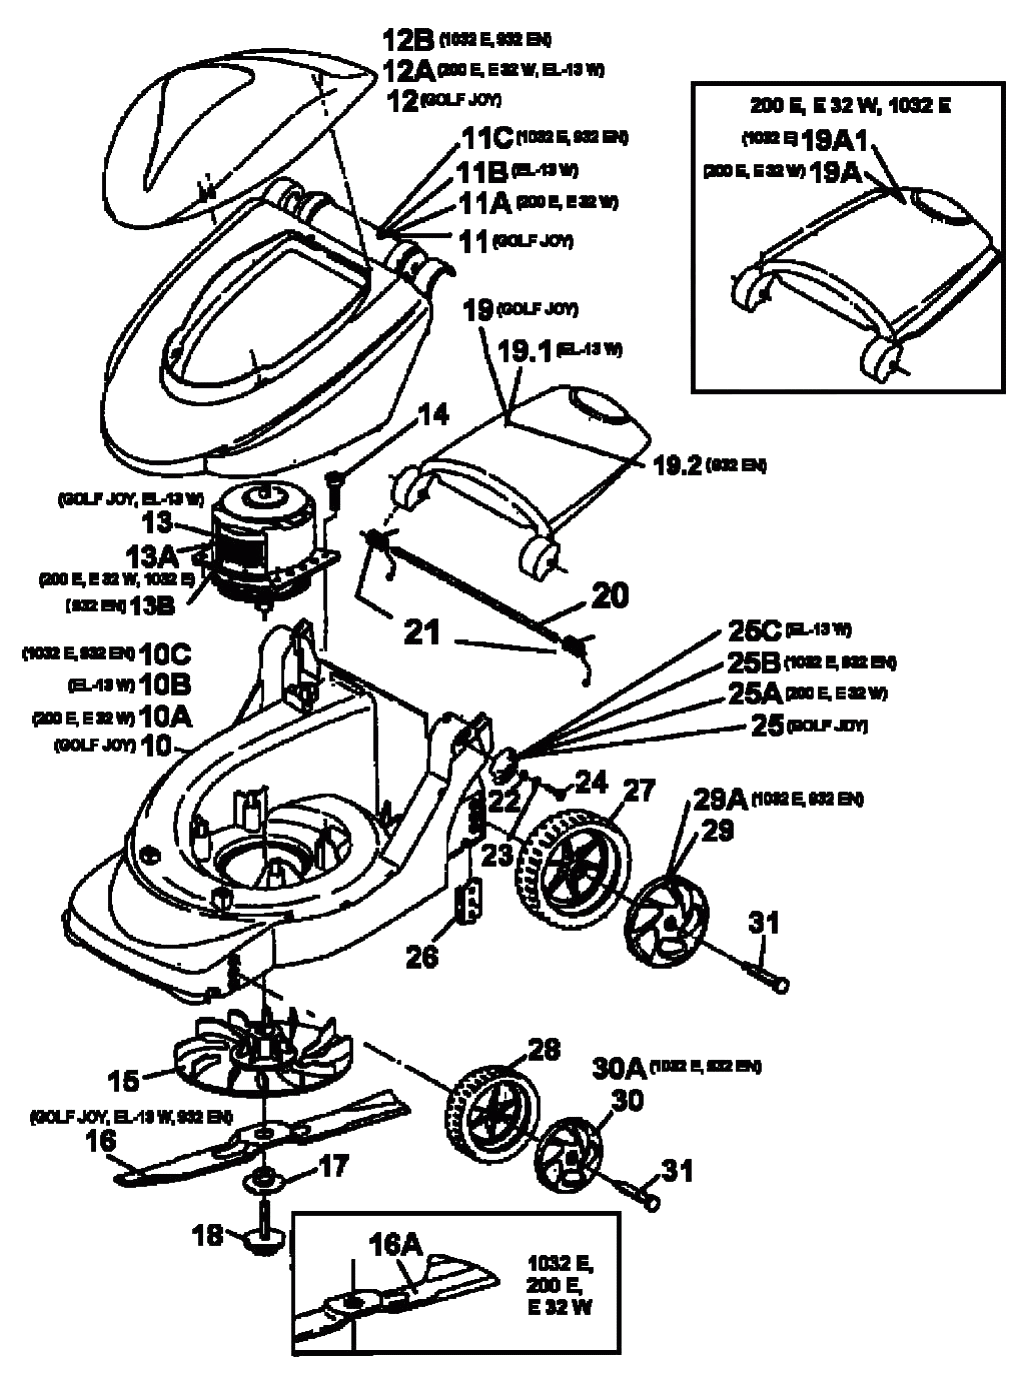 MTD Артикул 18B-C3D-678 (год выпуска 1999). Электромотор, ножи, колеса